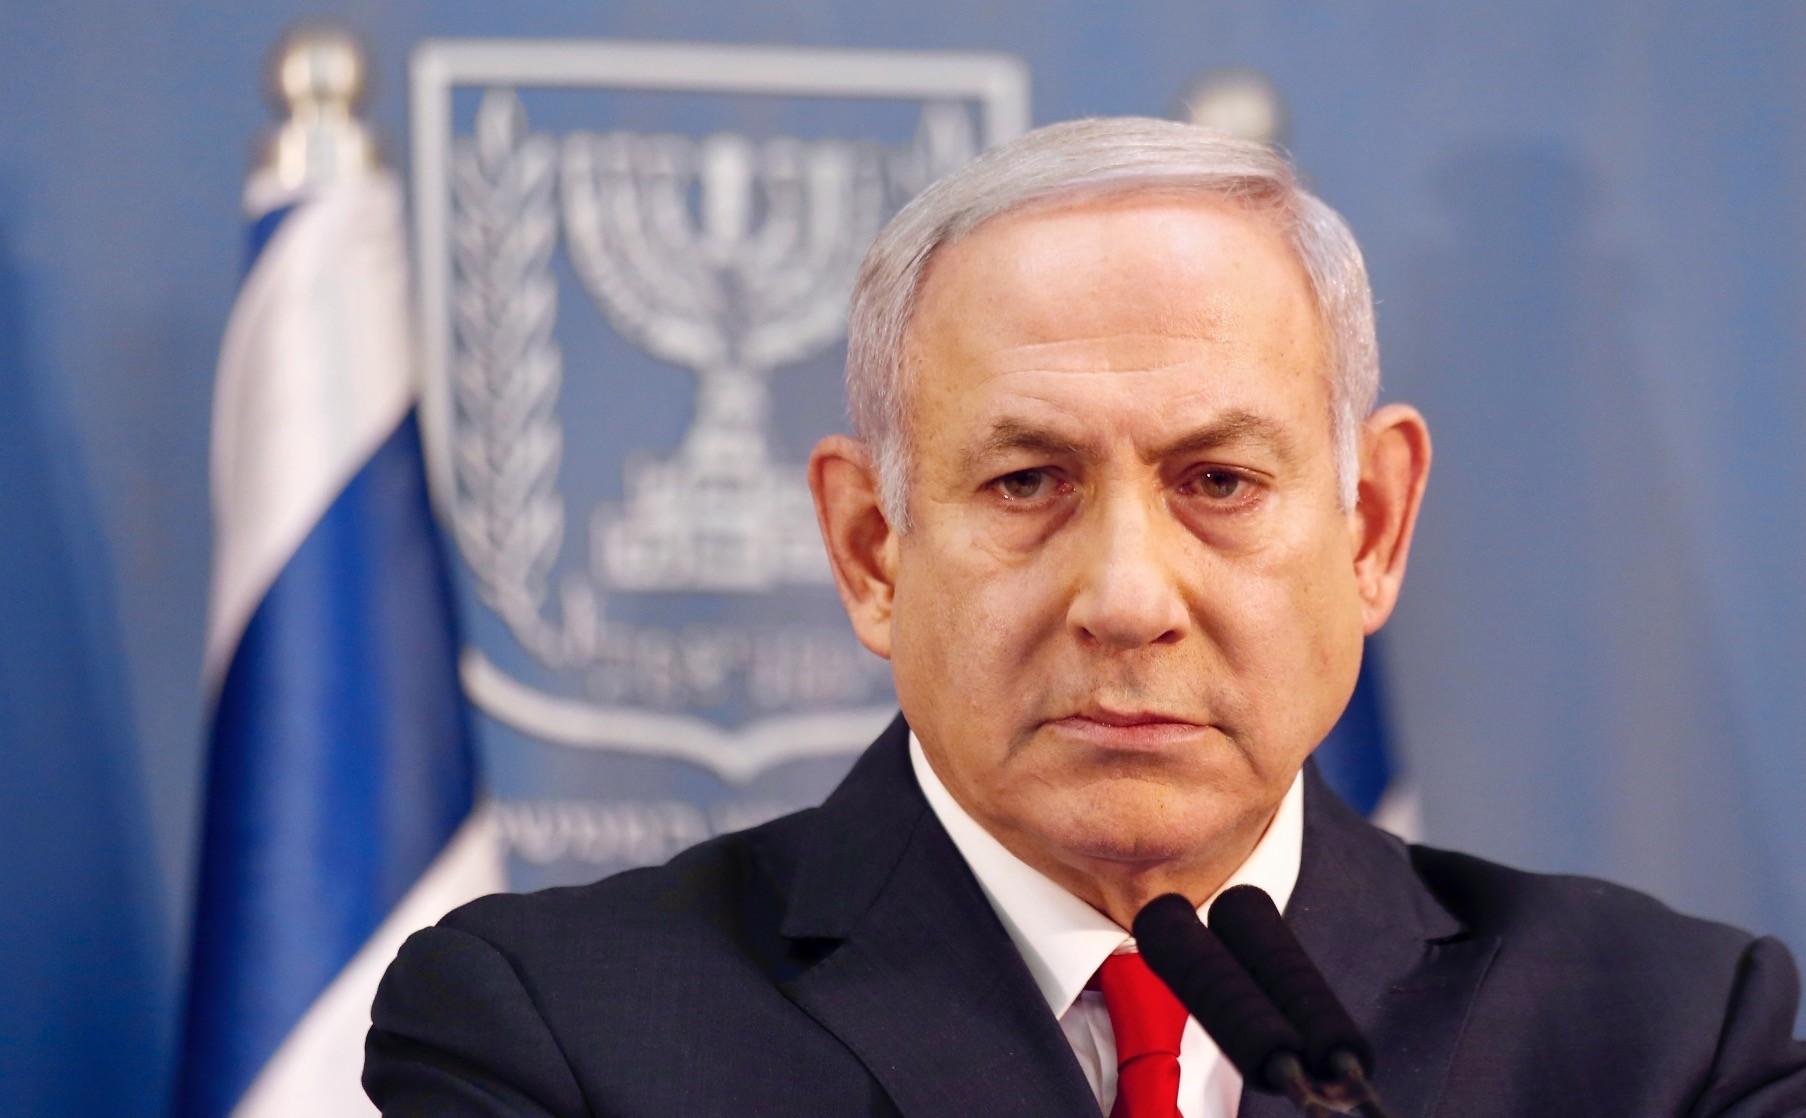 Israeli Prime Minister Benjamin Netanyahu delivers a statement, Tel Aviv, Nov. 18.